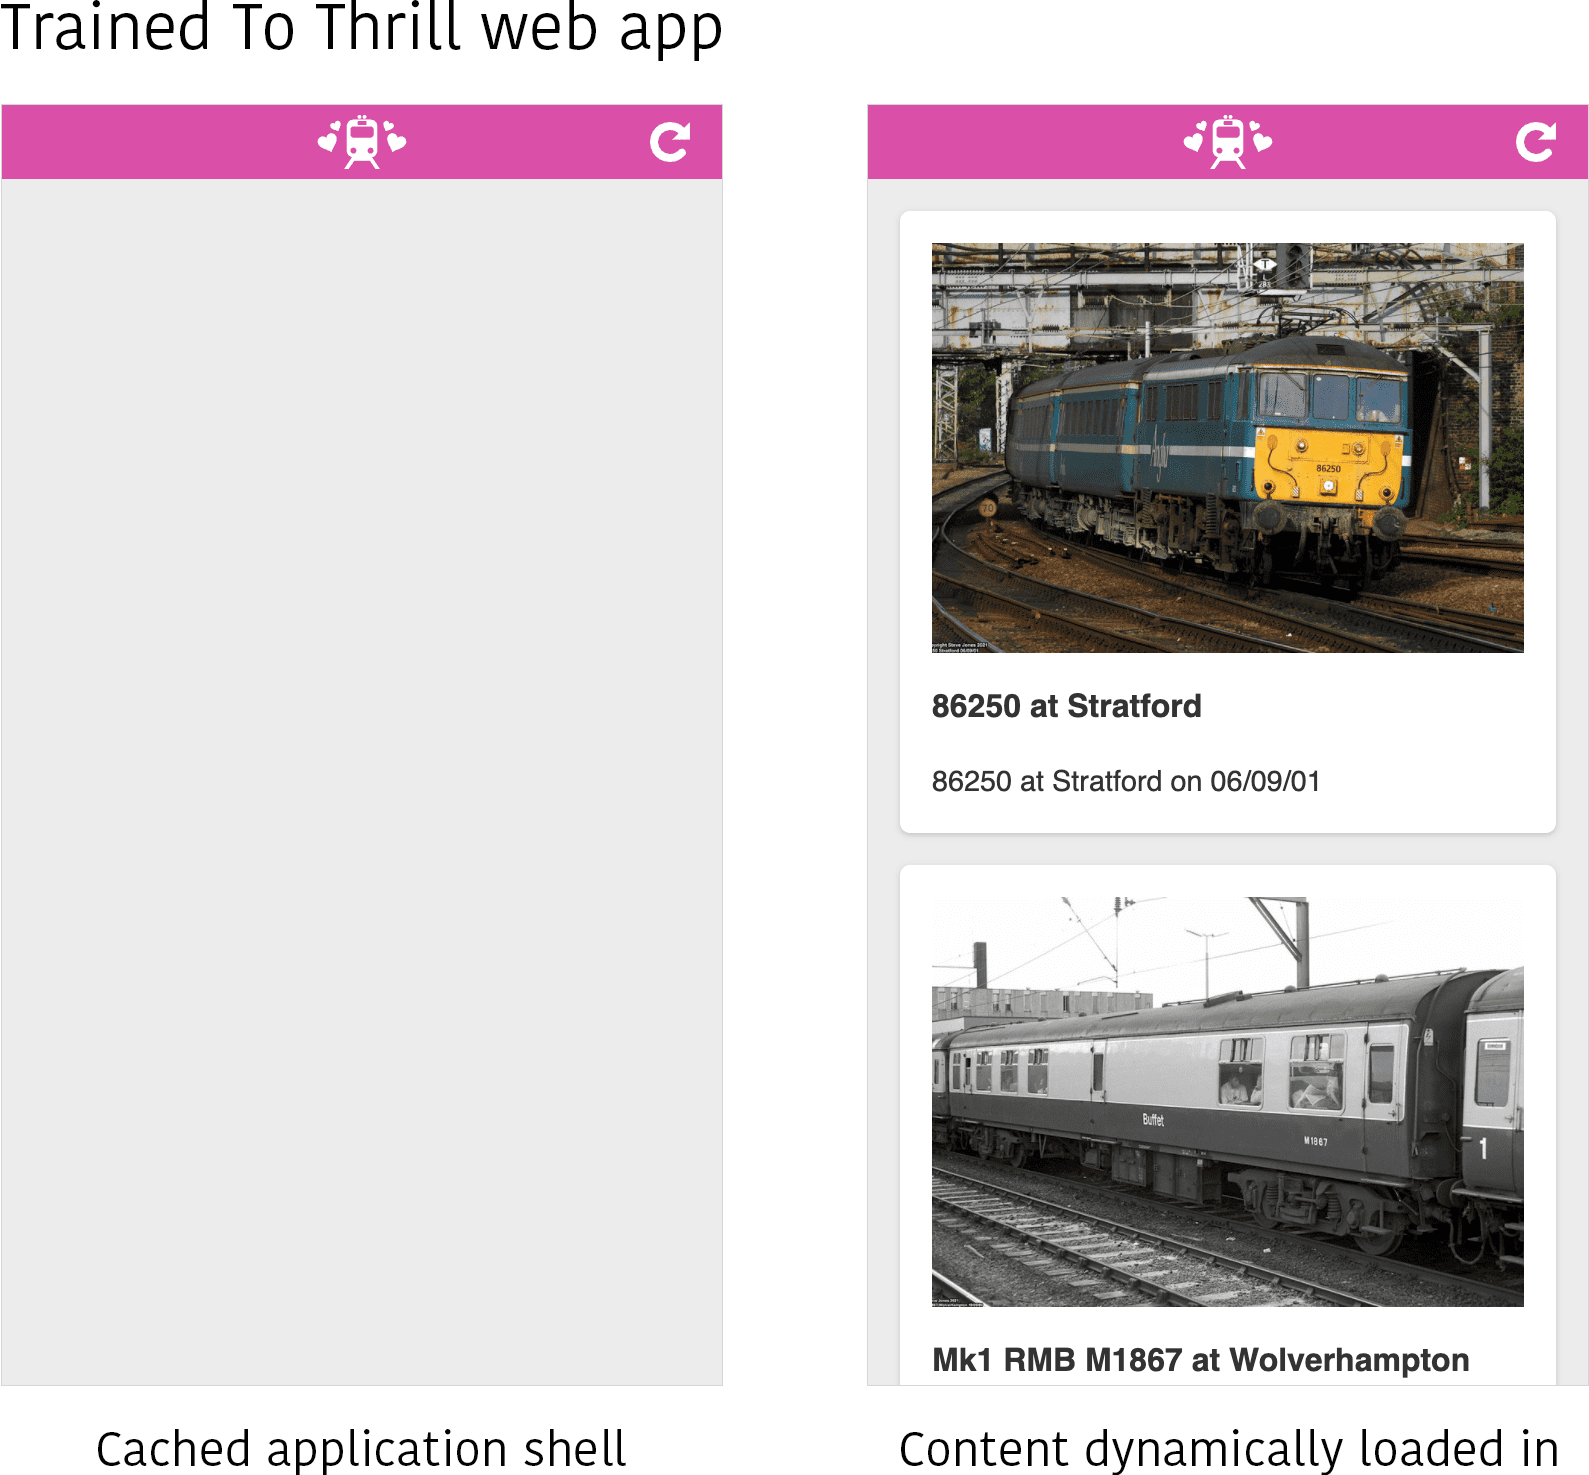 Zrzut ekranu aplikacji internetowej Trained to Thrill w 2 różnych stanach. Po lewej stronie widoczna jest tylko powłoka aplikacji przechowywana w pamięci podręcznej bez wypełnionej treści. Po prawej stronie zawartość (kilka zdjęć niektórych pociągów) jest dynamicznie wczytywana do obszaru treści powłoki aplikacji.